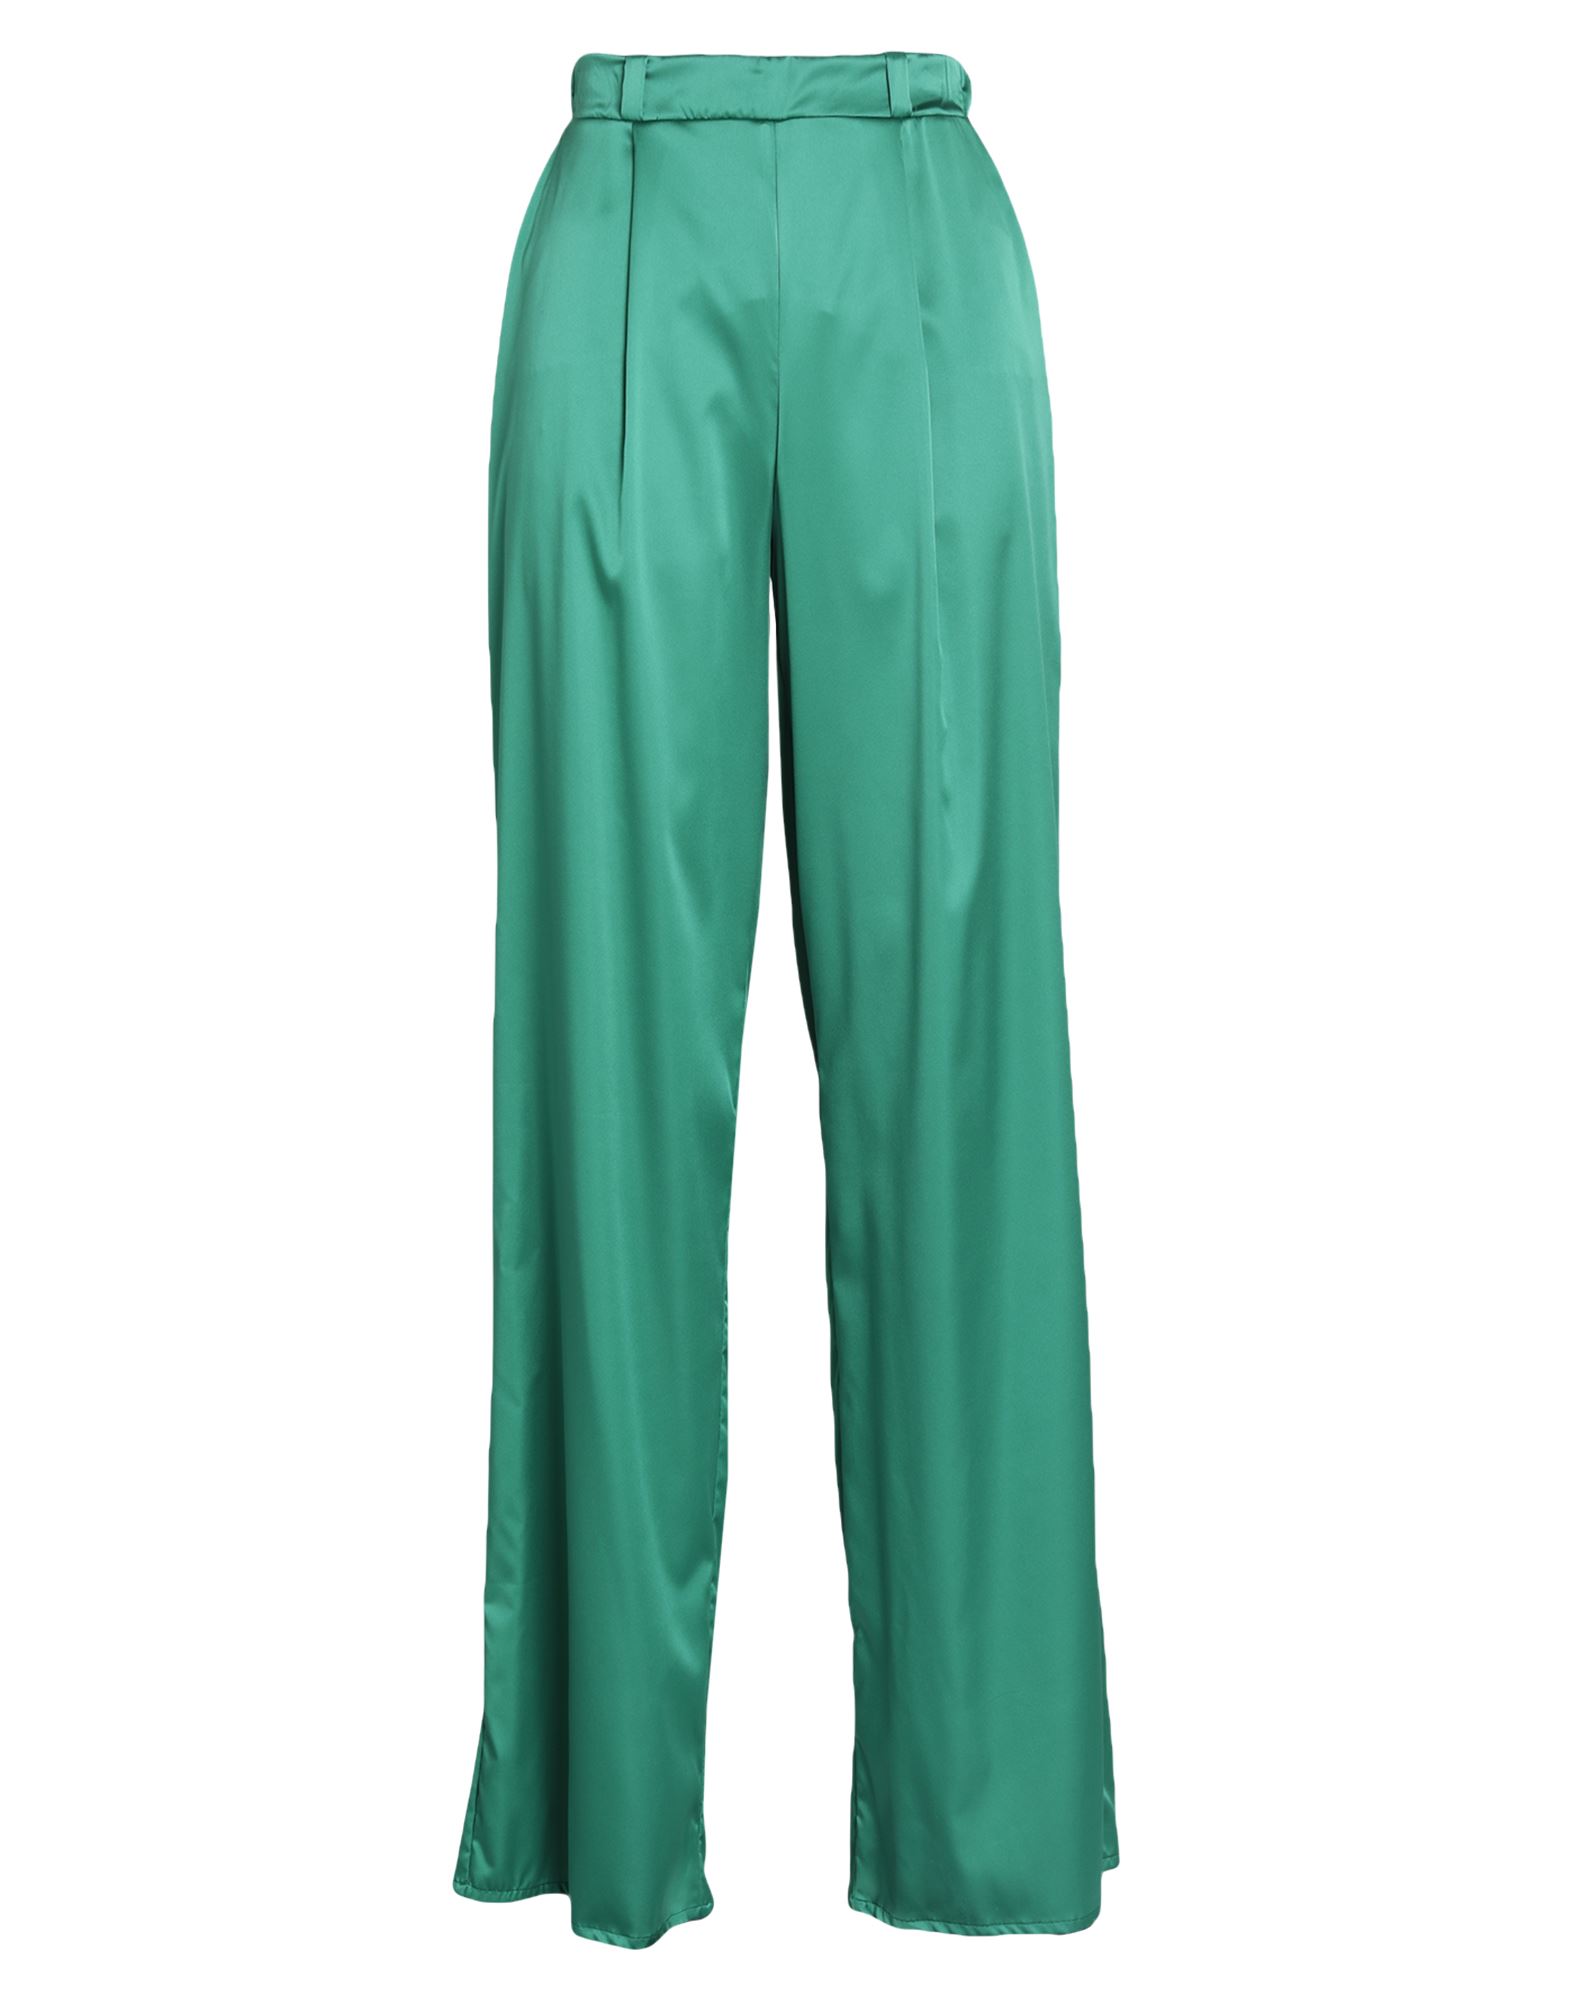 Chiara Boni La Petite Robe Pants In Green | ModeSens